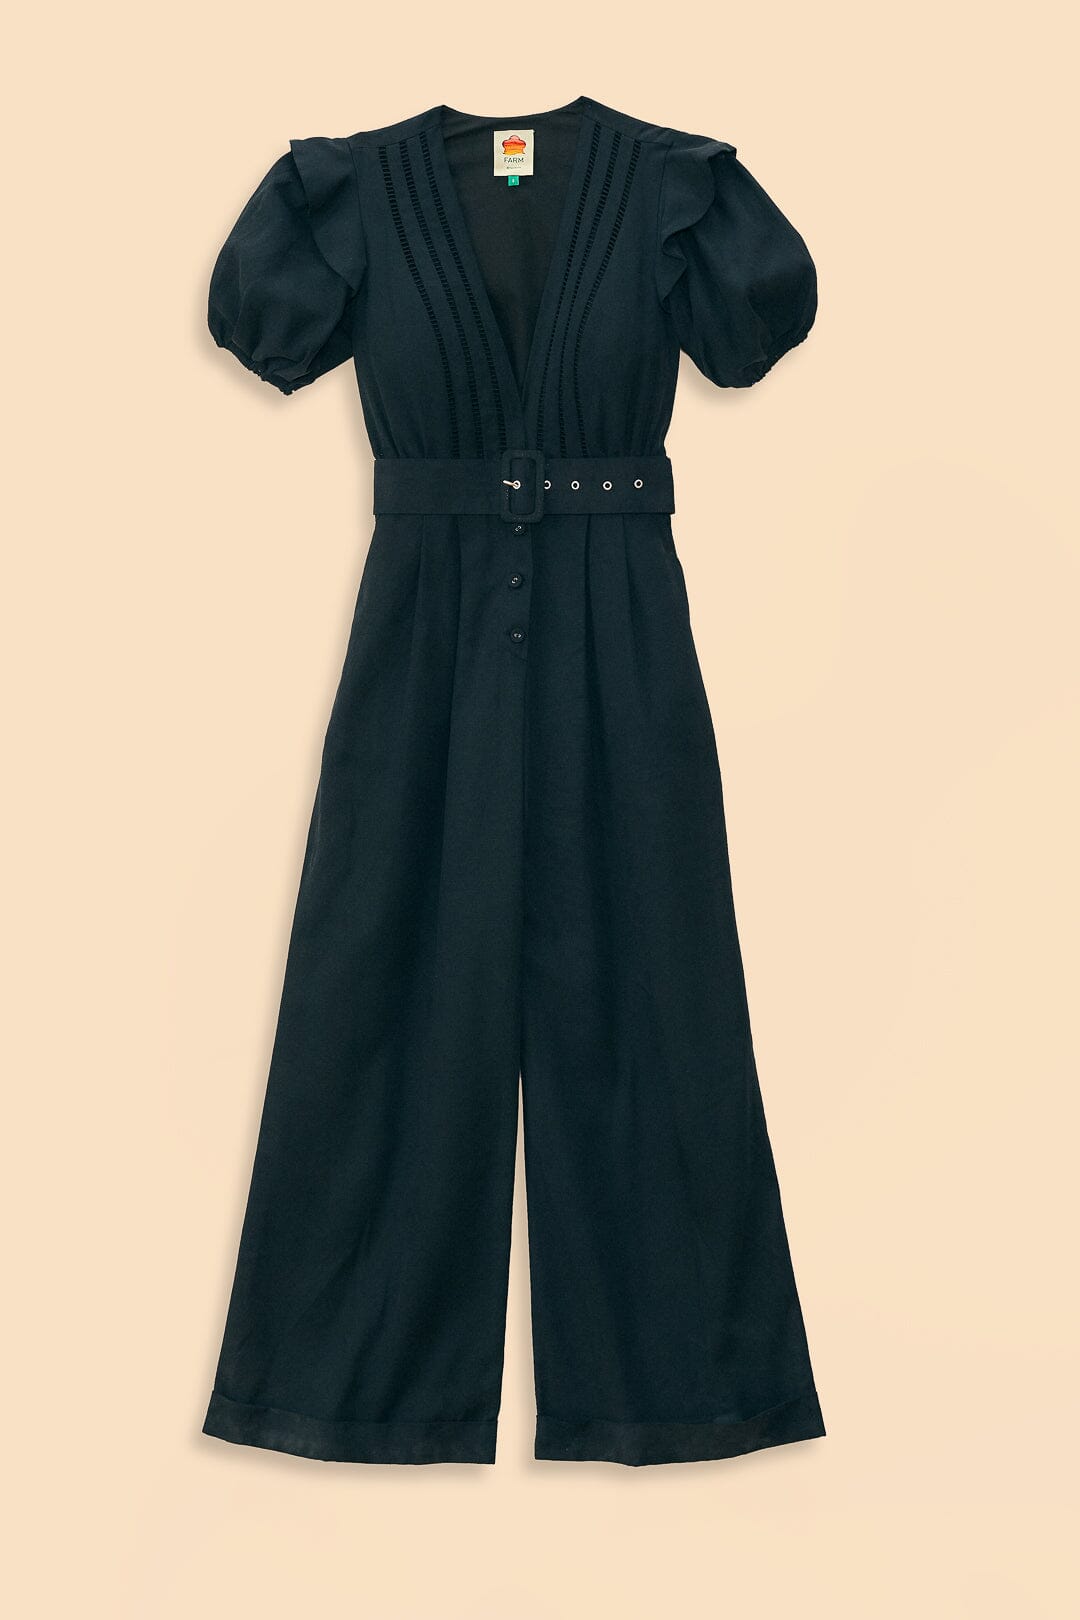 Black Pleated Short Sleeve Jumpsuit